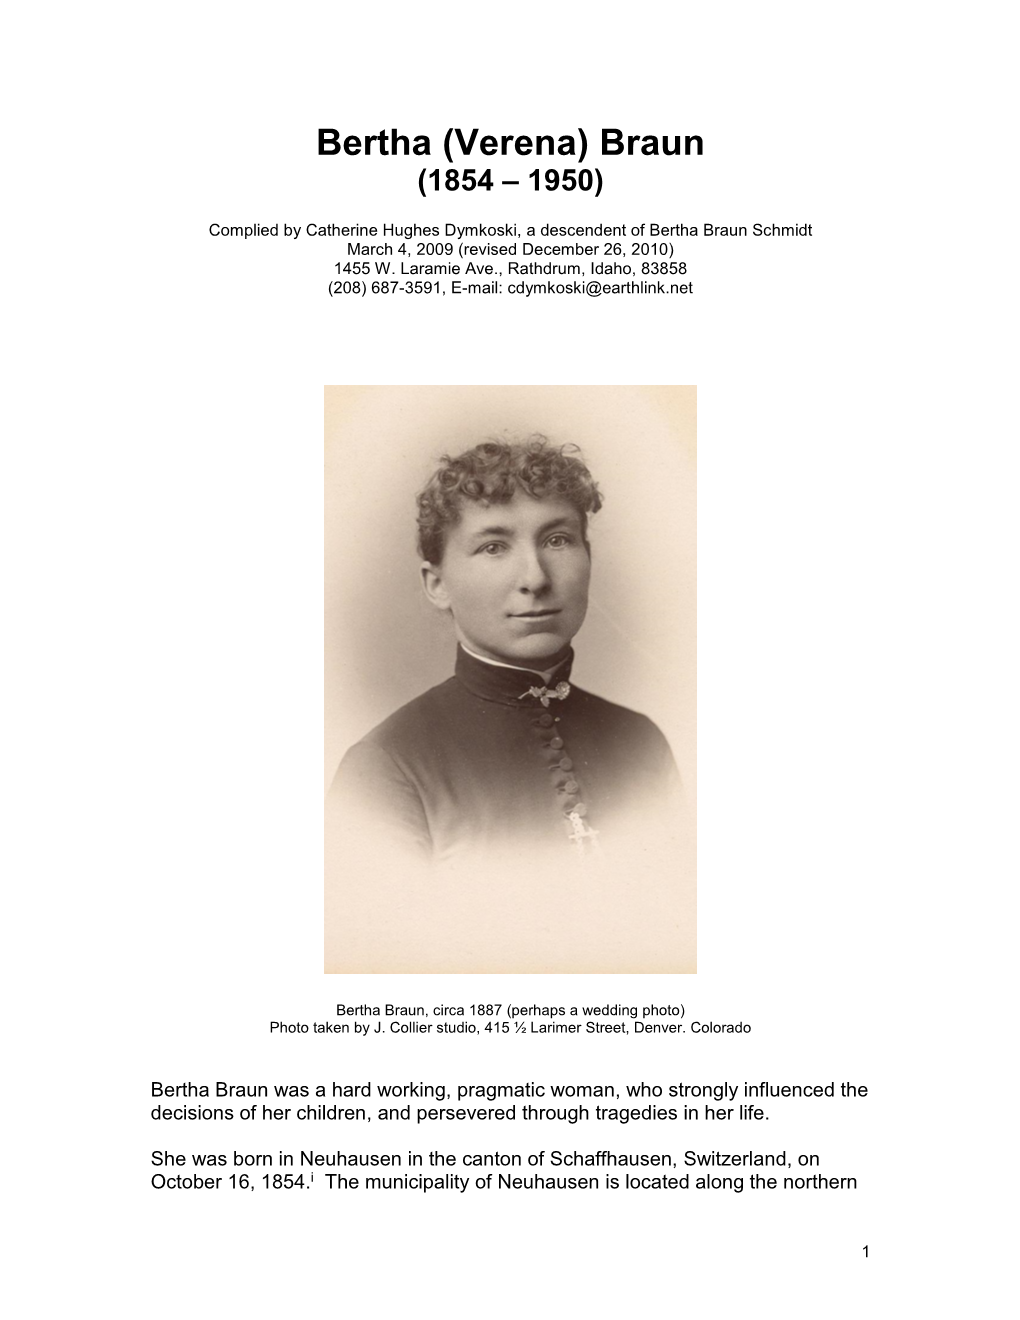 Biography of Bertha Braun Schmidt